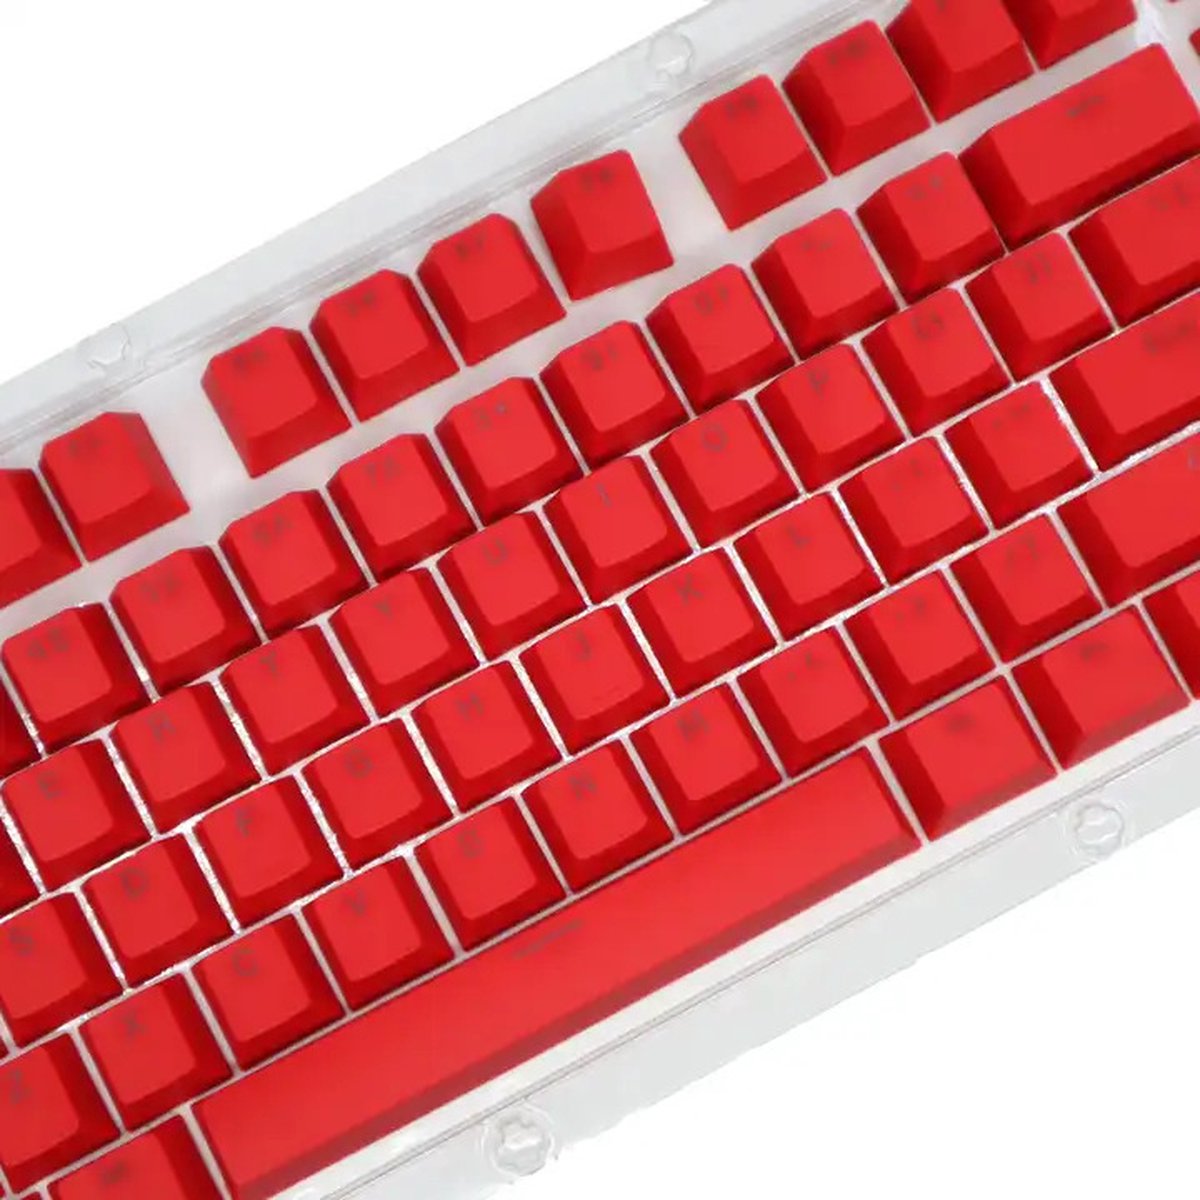 Elevanta® Cherry Rood Keycaps ABS - 106 Toetsen - Losse Keycaps voor Toetsenbord